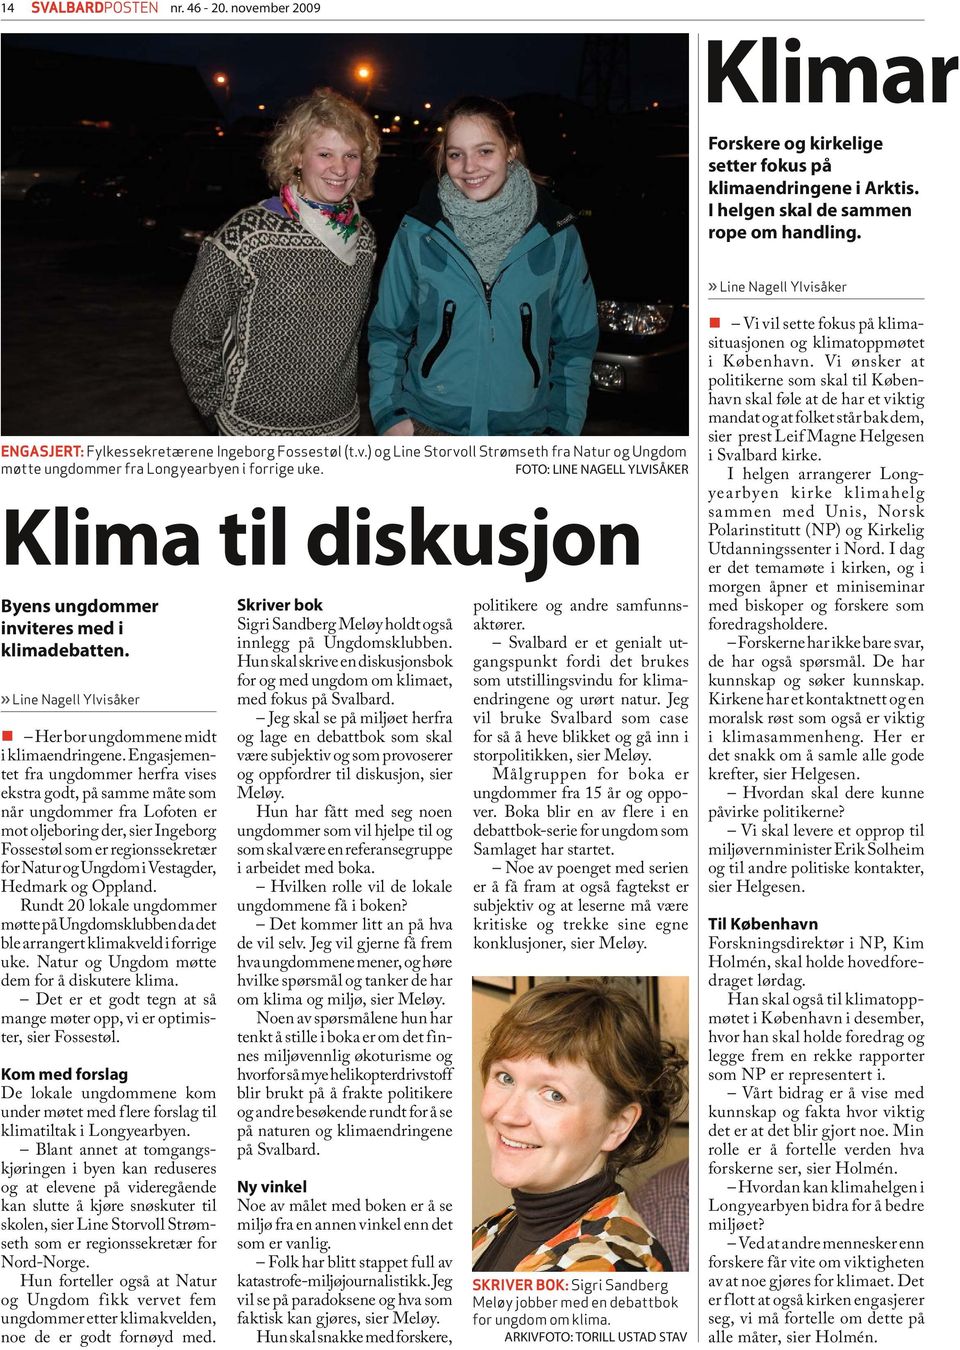 Engasjementet fra ungdommer herfra vises ekstra godt, på samme måte som når ungdommer fra Lofoten er mot oljeboring der, sier Ingeborg Fossestøl som er regionssekretær for Natur og Ungdom i